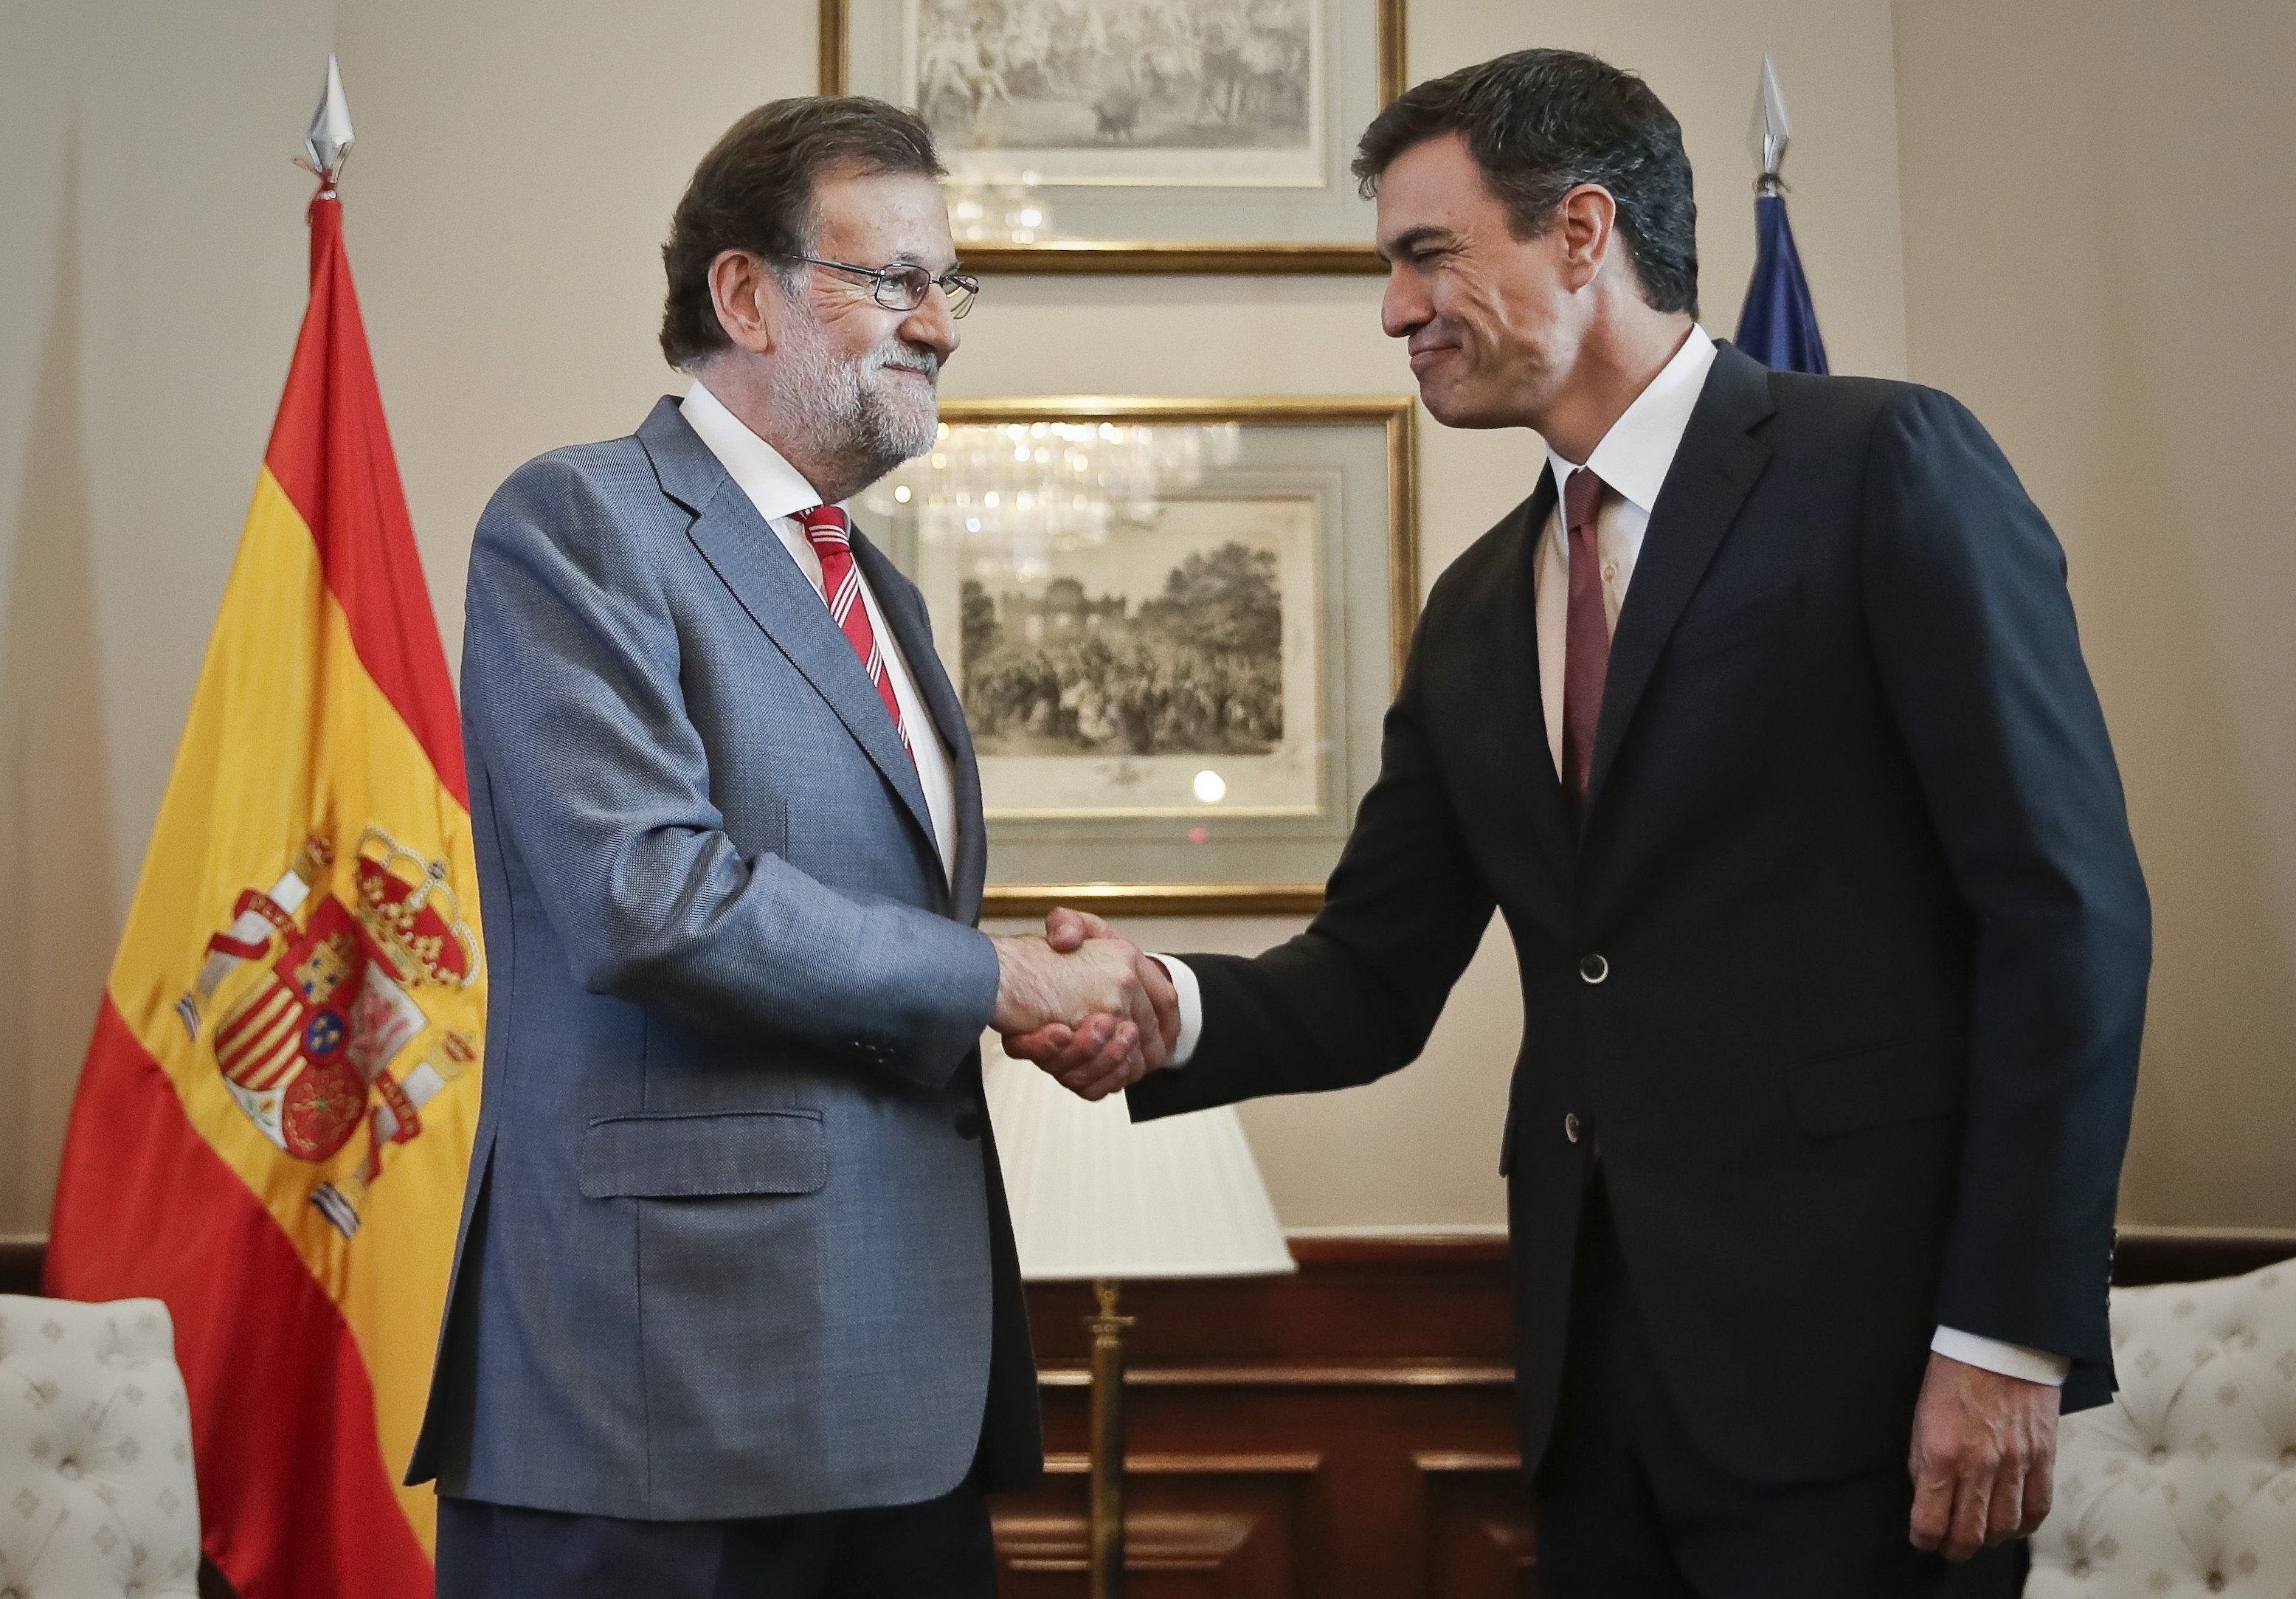 La unitat de Sánchez i Rajoy complau la premsa estatal